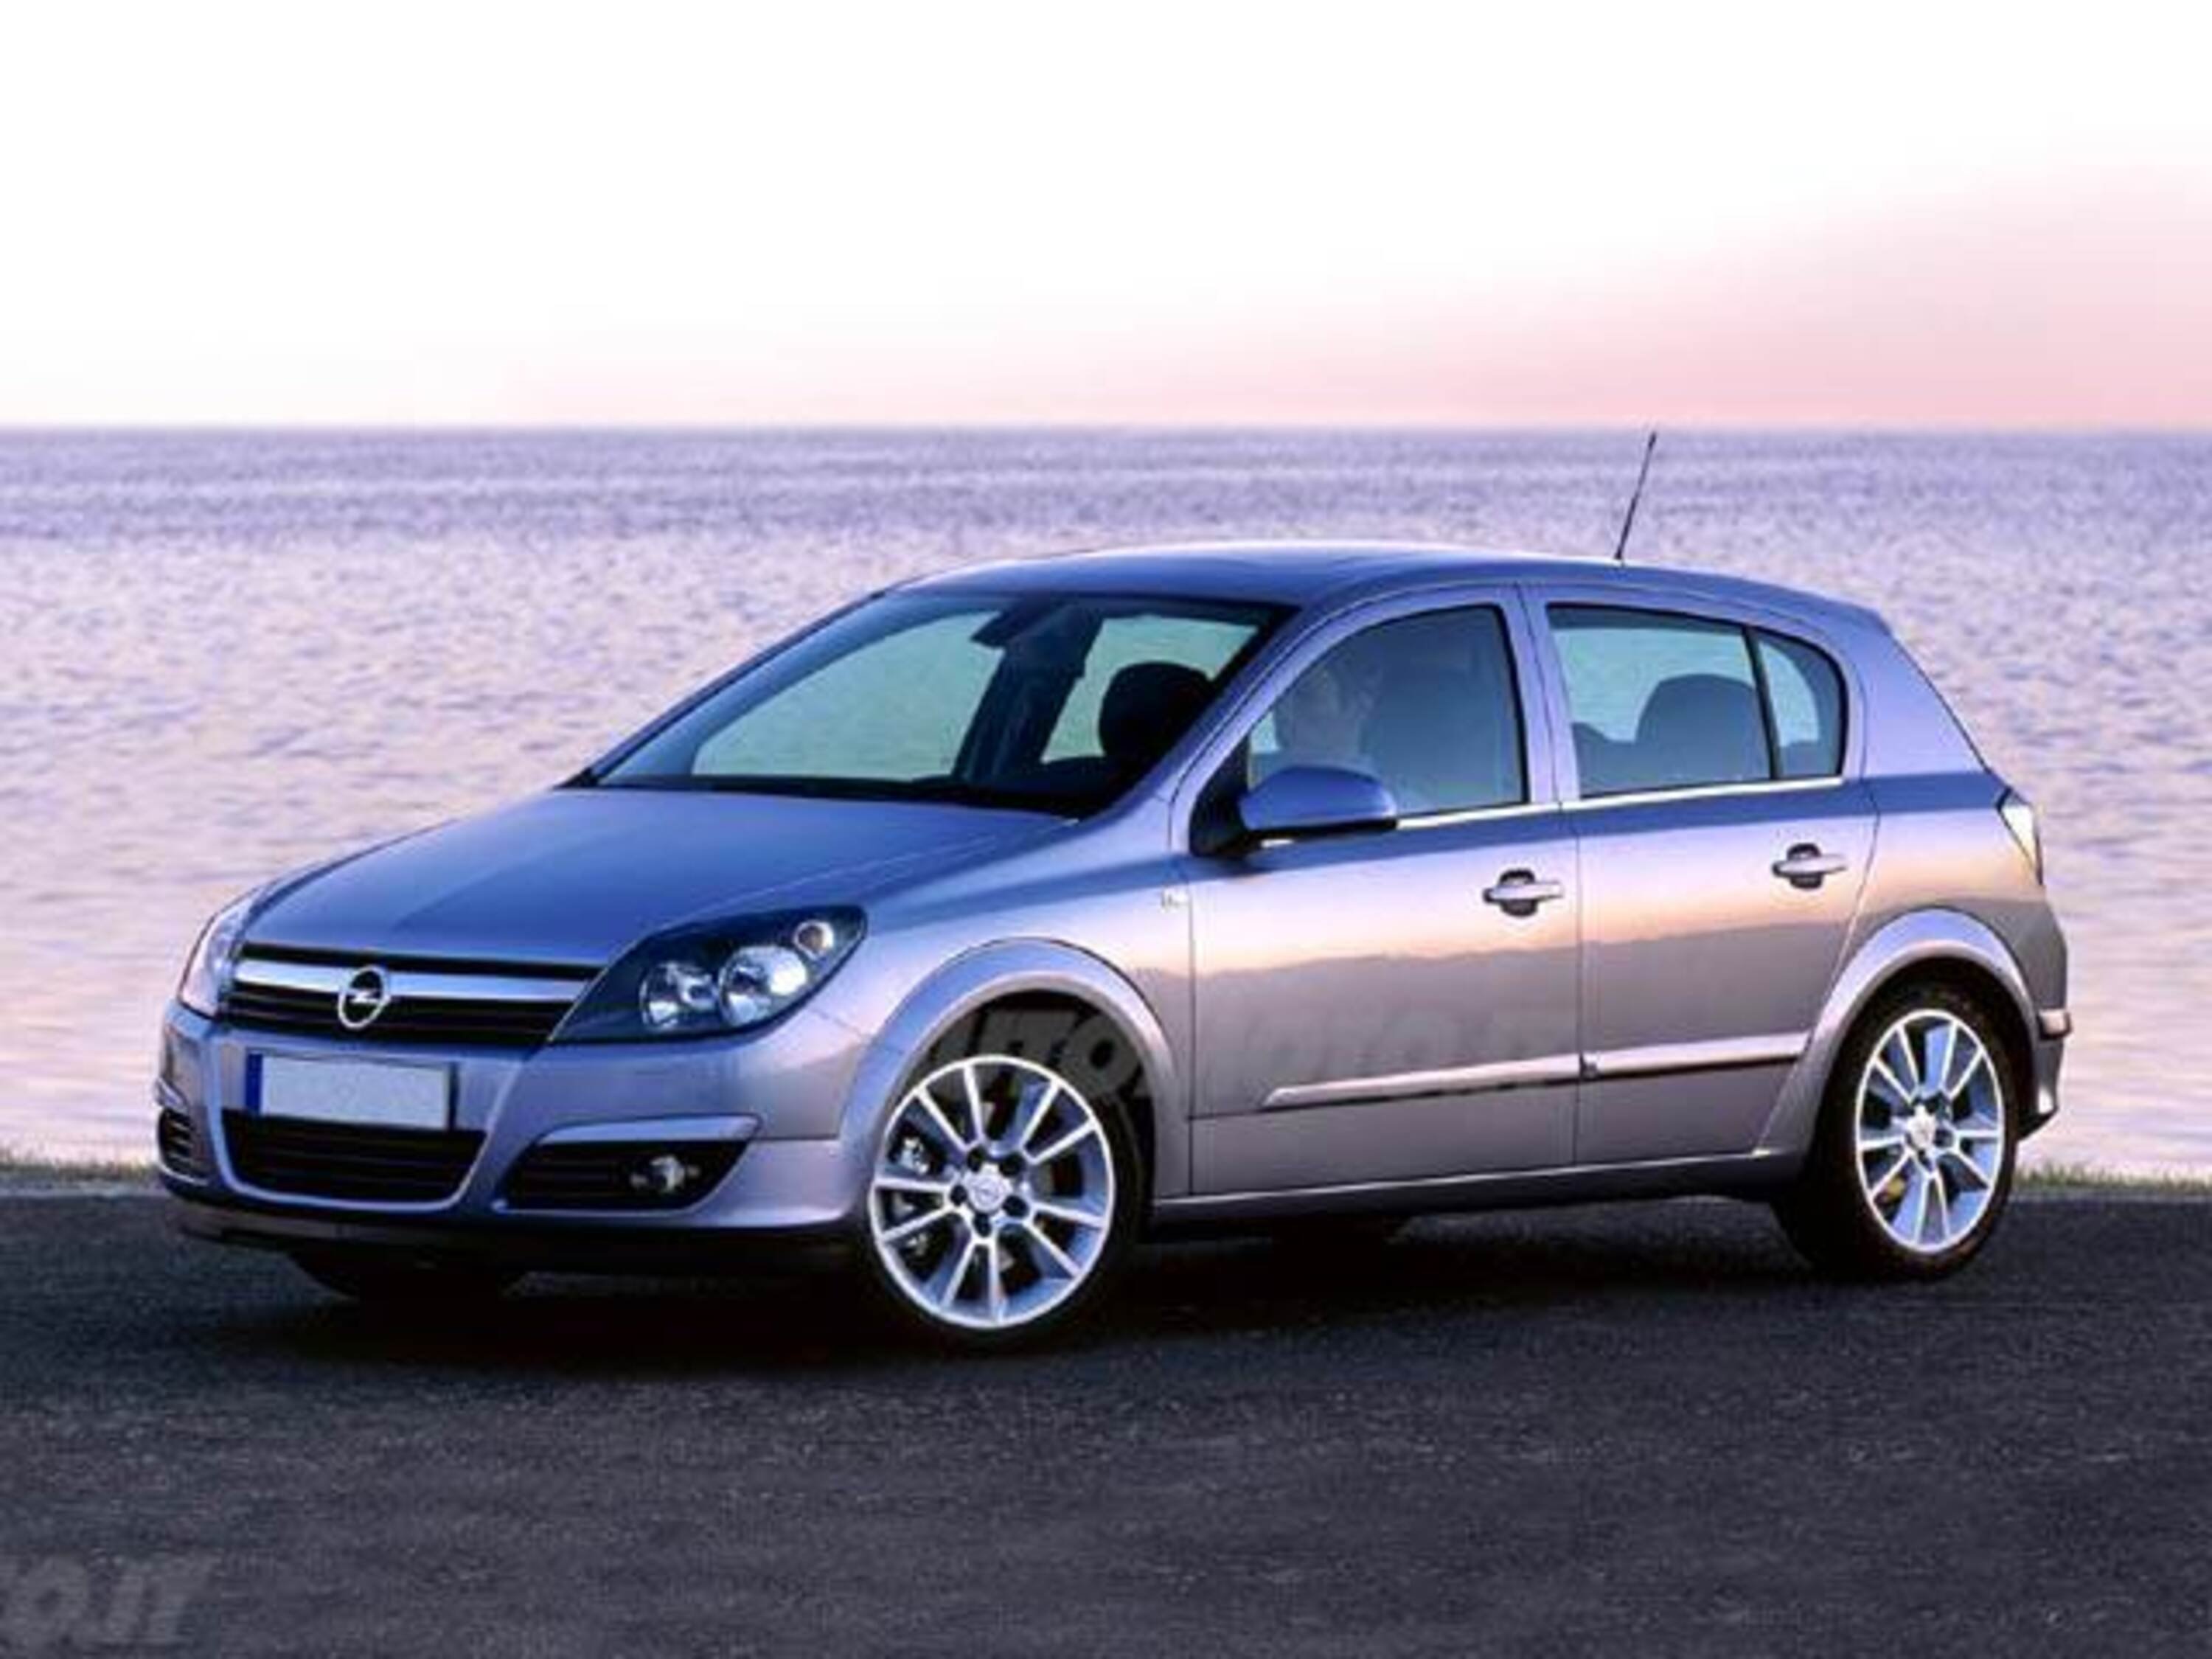 Opel Astra 1.4 16V GPL-TECH 5 porte Enjoy